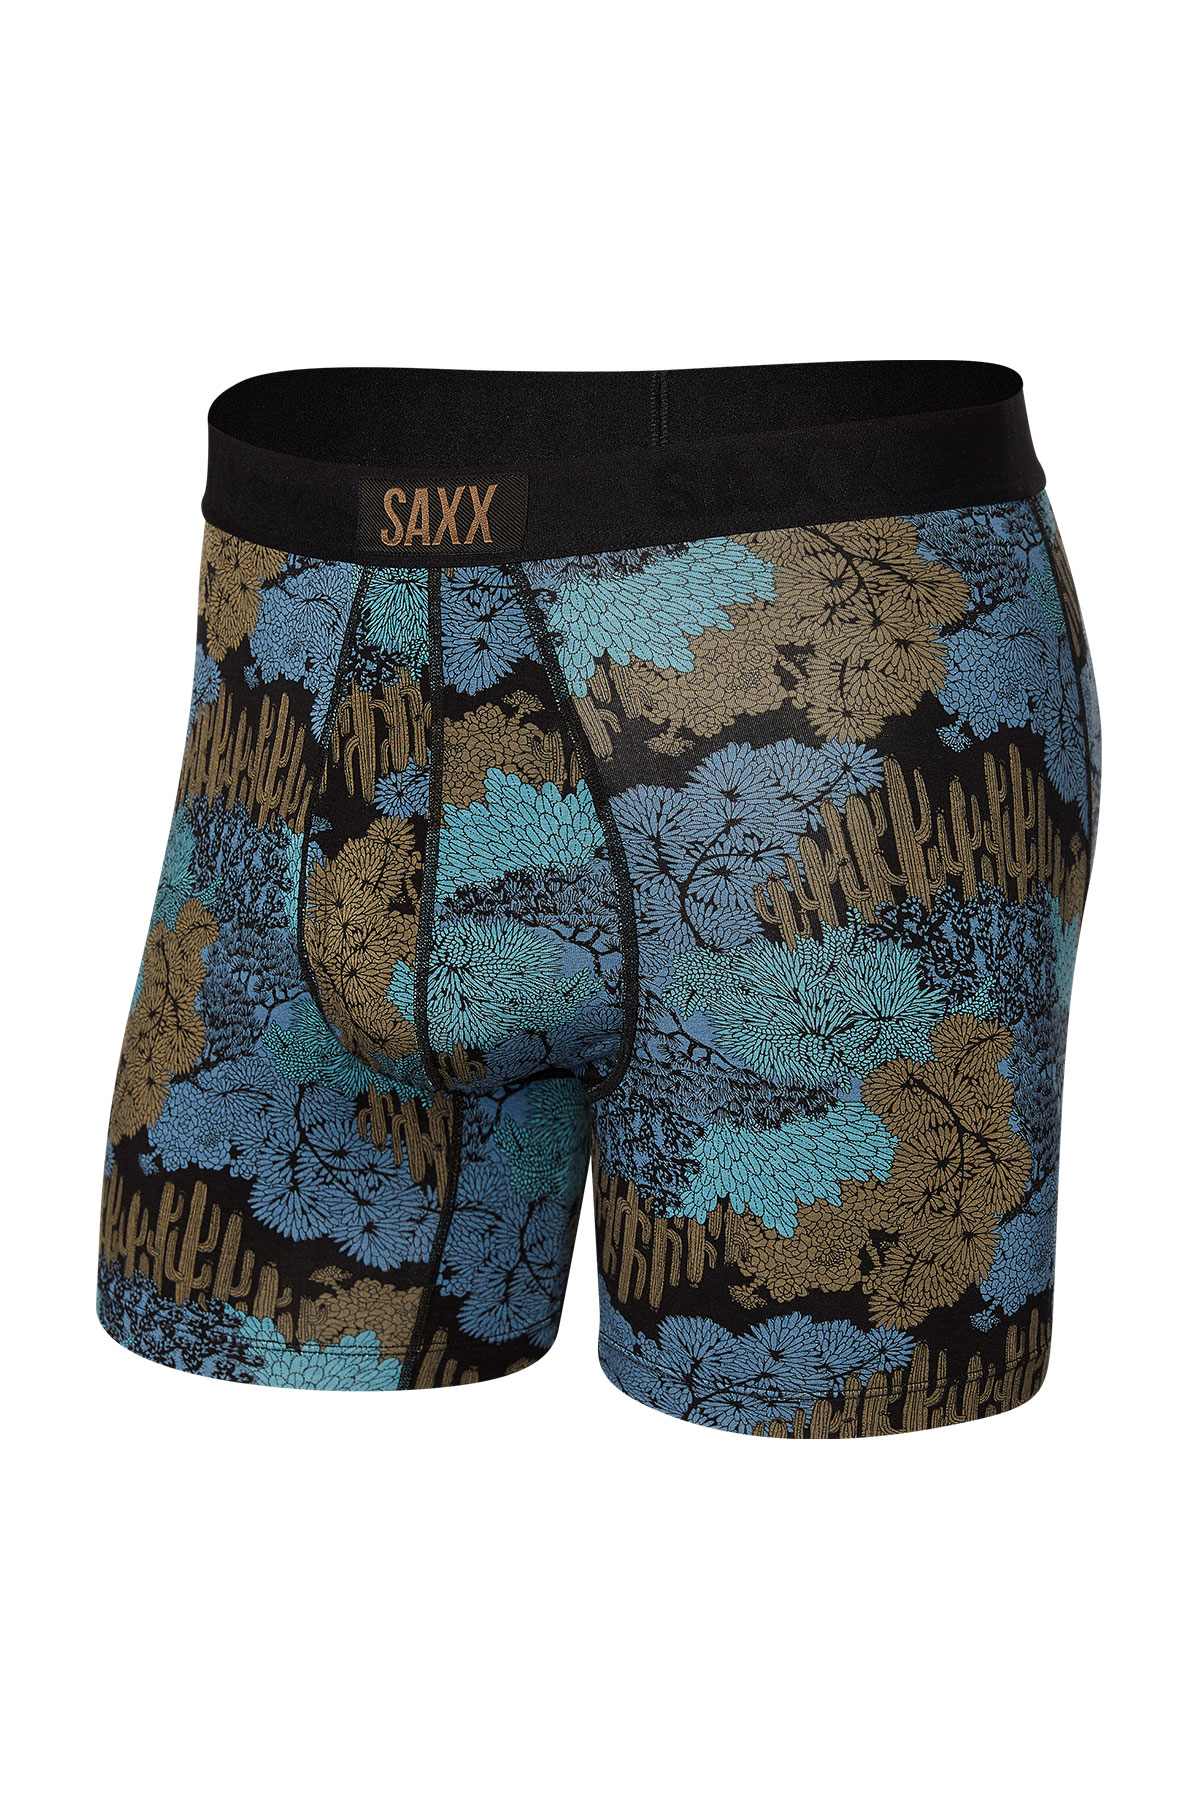 SAXX Underwear Men's Ultra Boxer Briefs Review